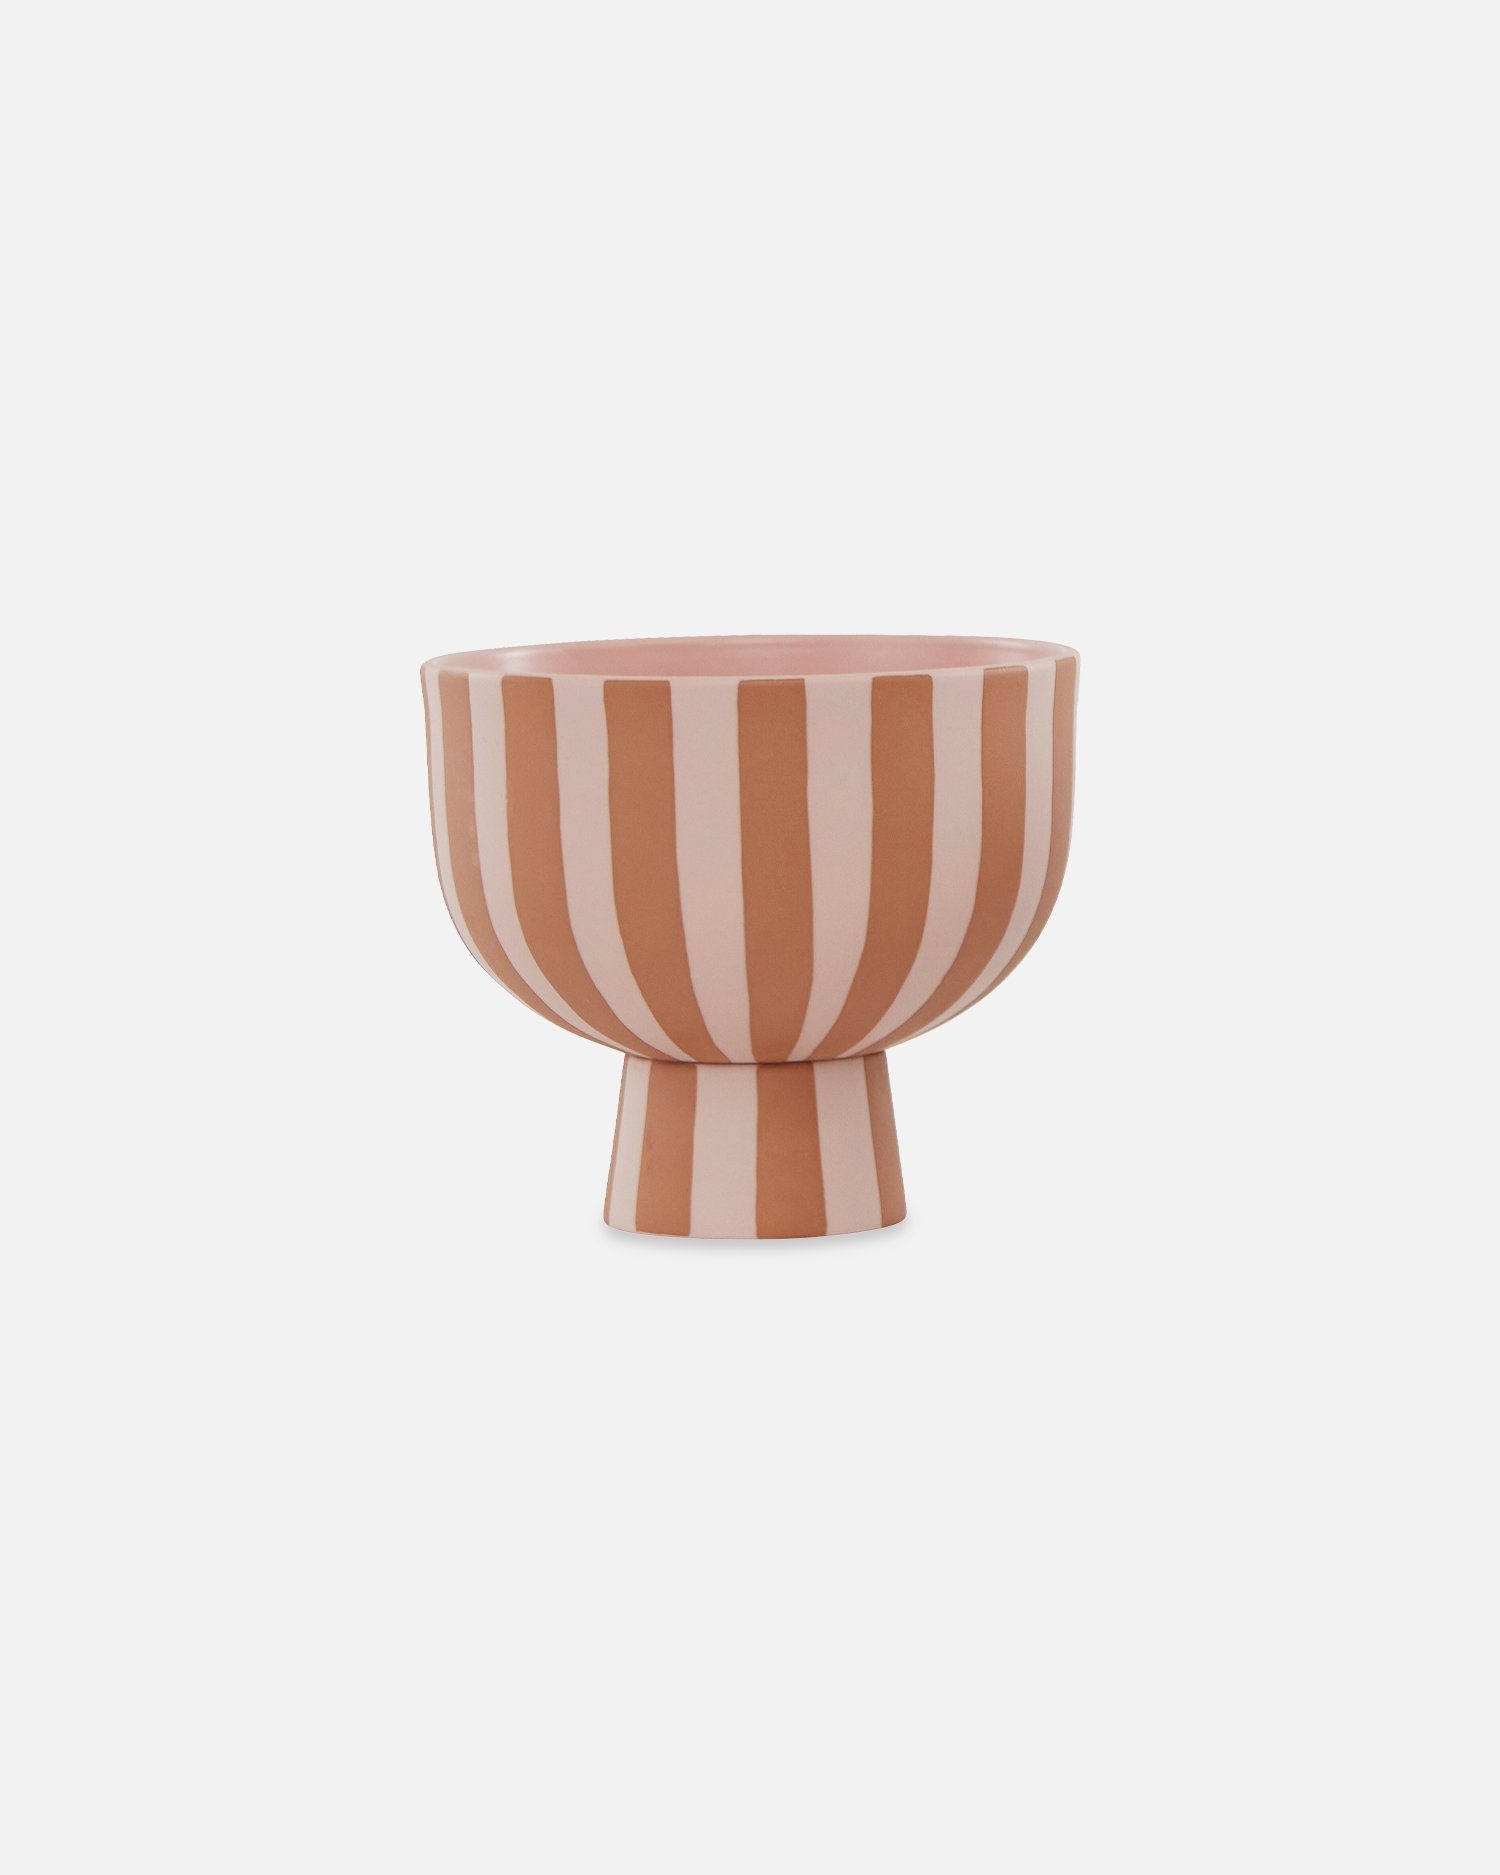 OYOY Dekoschüssel Toppu Bowl - Dekoschale Gestreift aus Keramik - Ø15 x H13 cm, Karamell/Rosa | Obstschalen